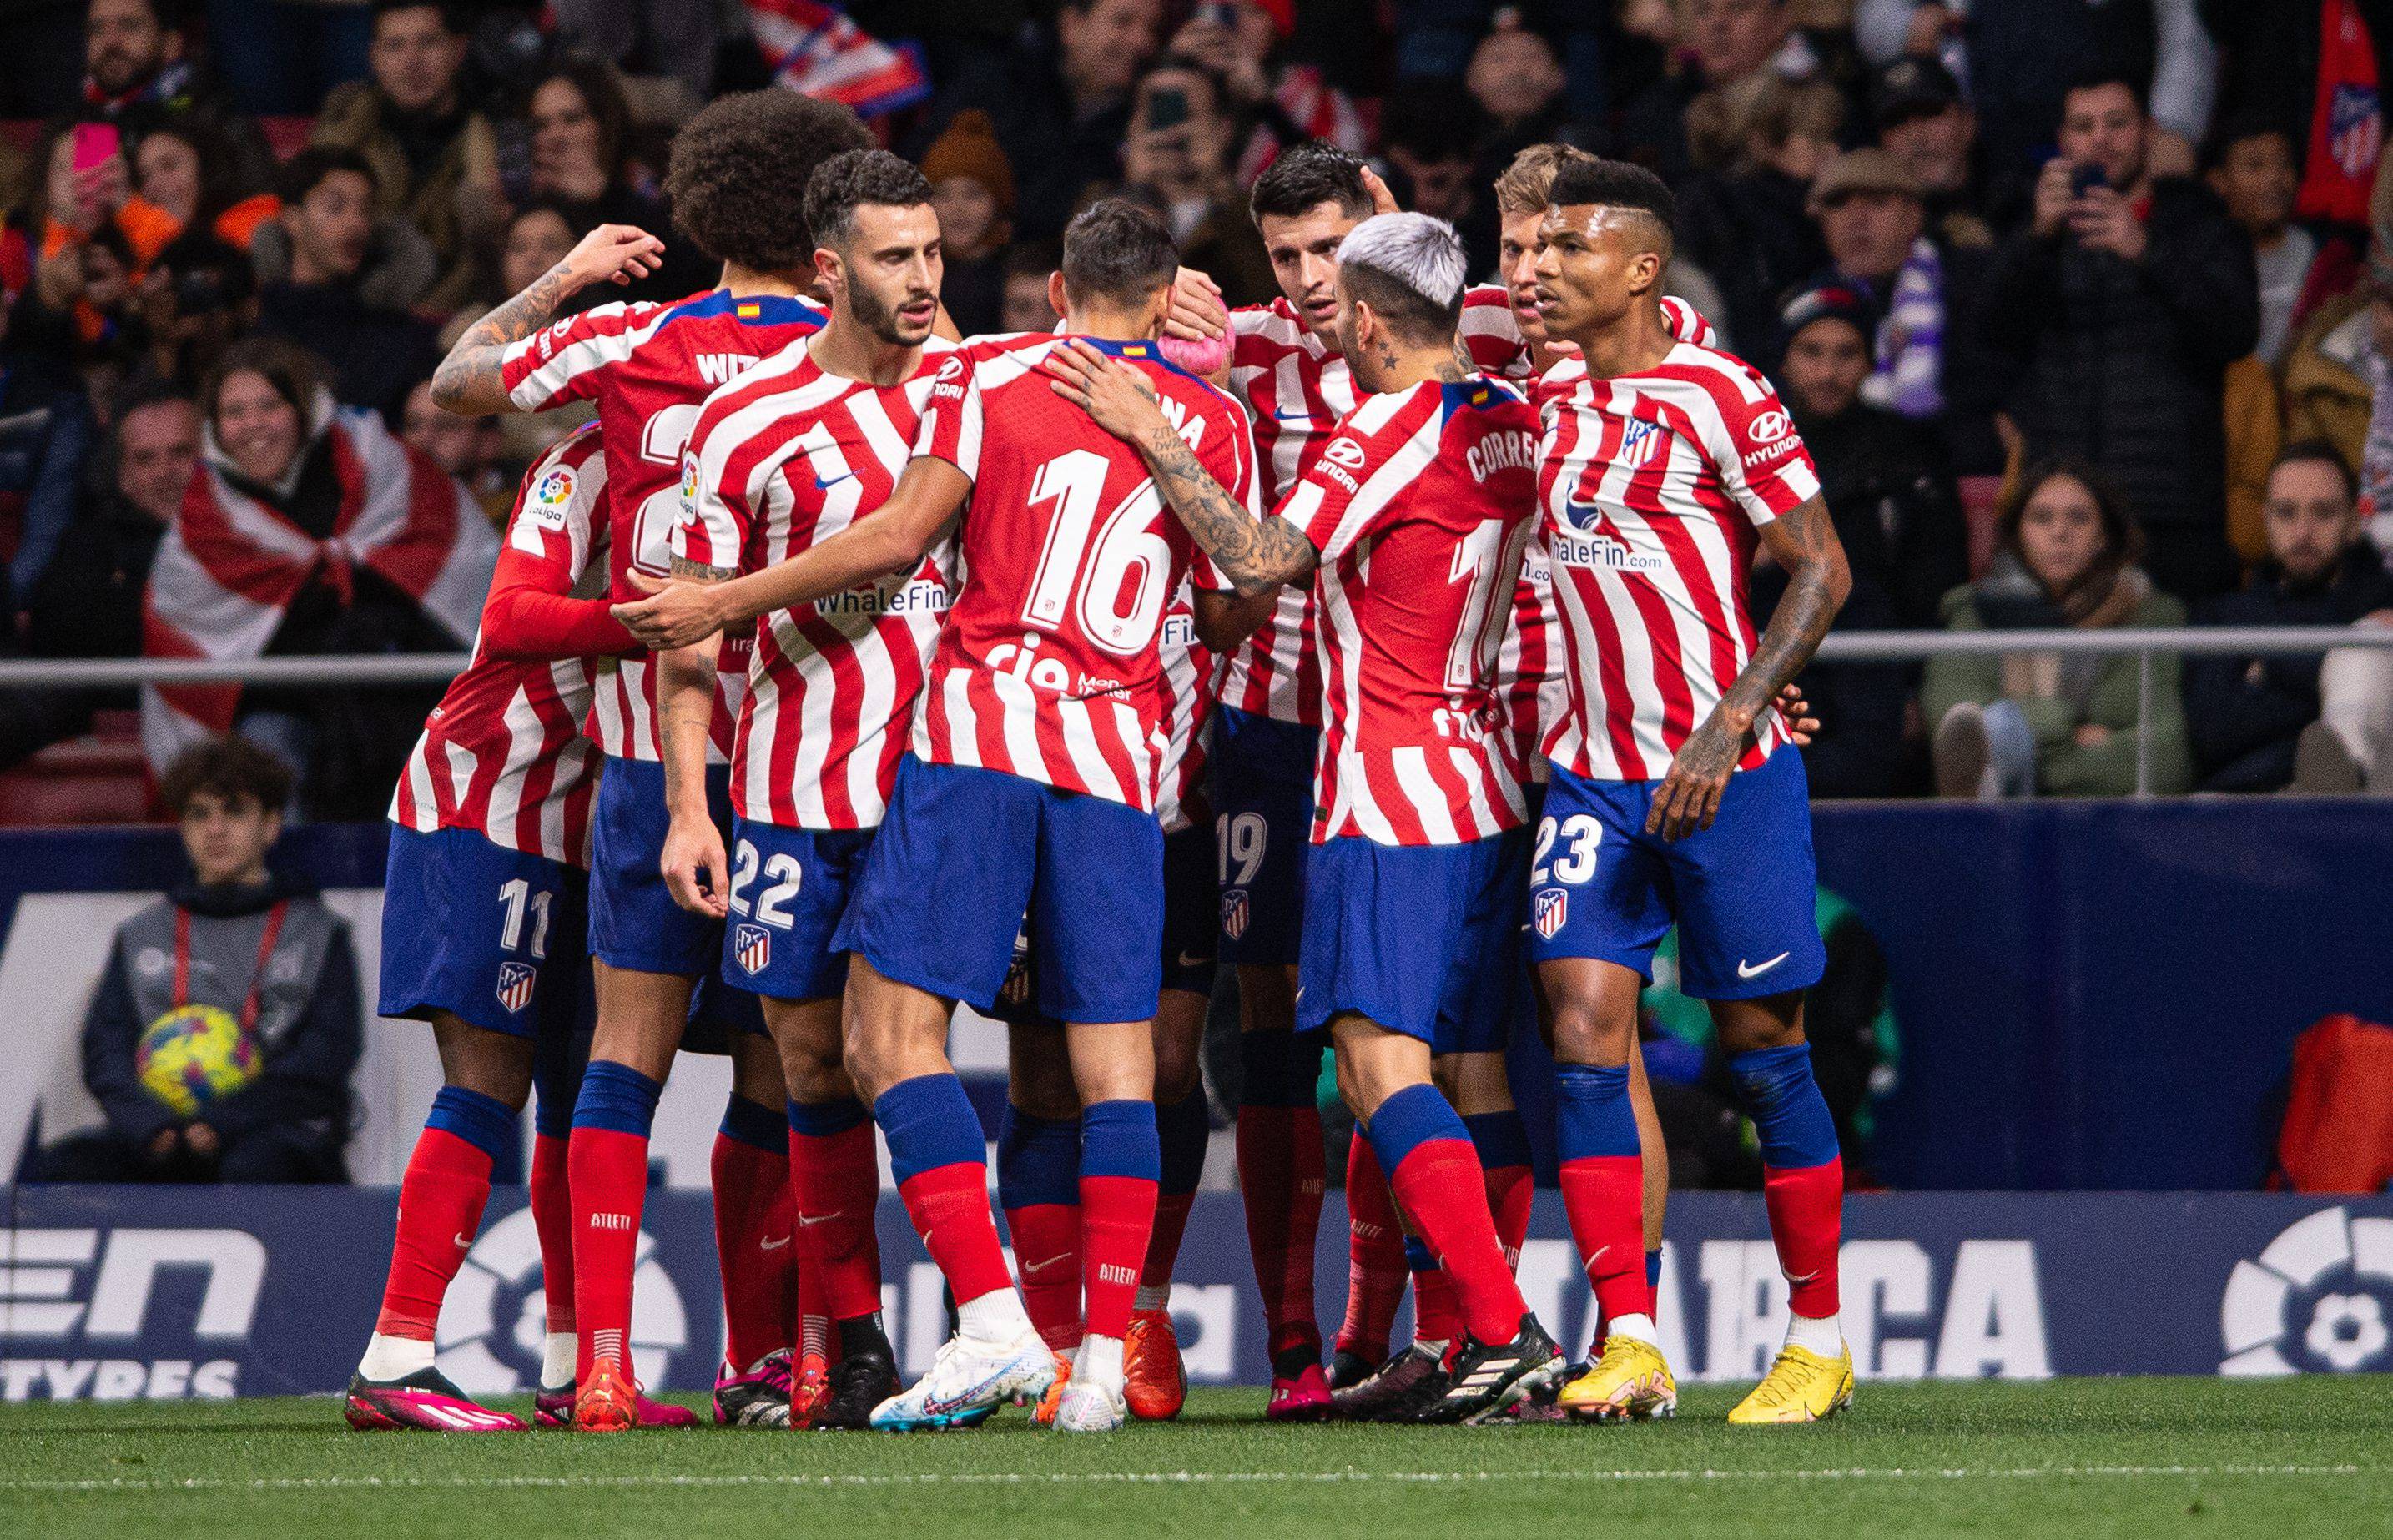 Los jugadores del Atlético de Madrid celebran uno de los goles ante el Real Valladolid (Foto: Cord